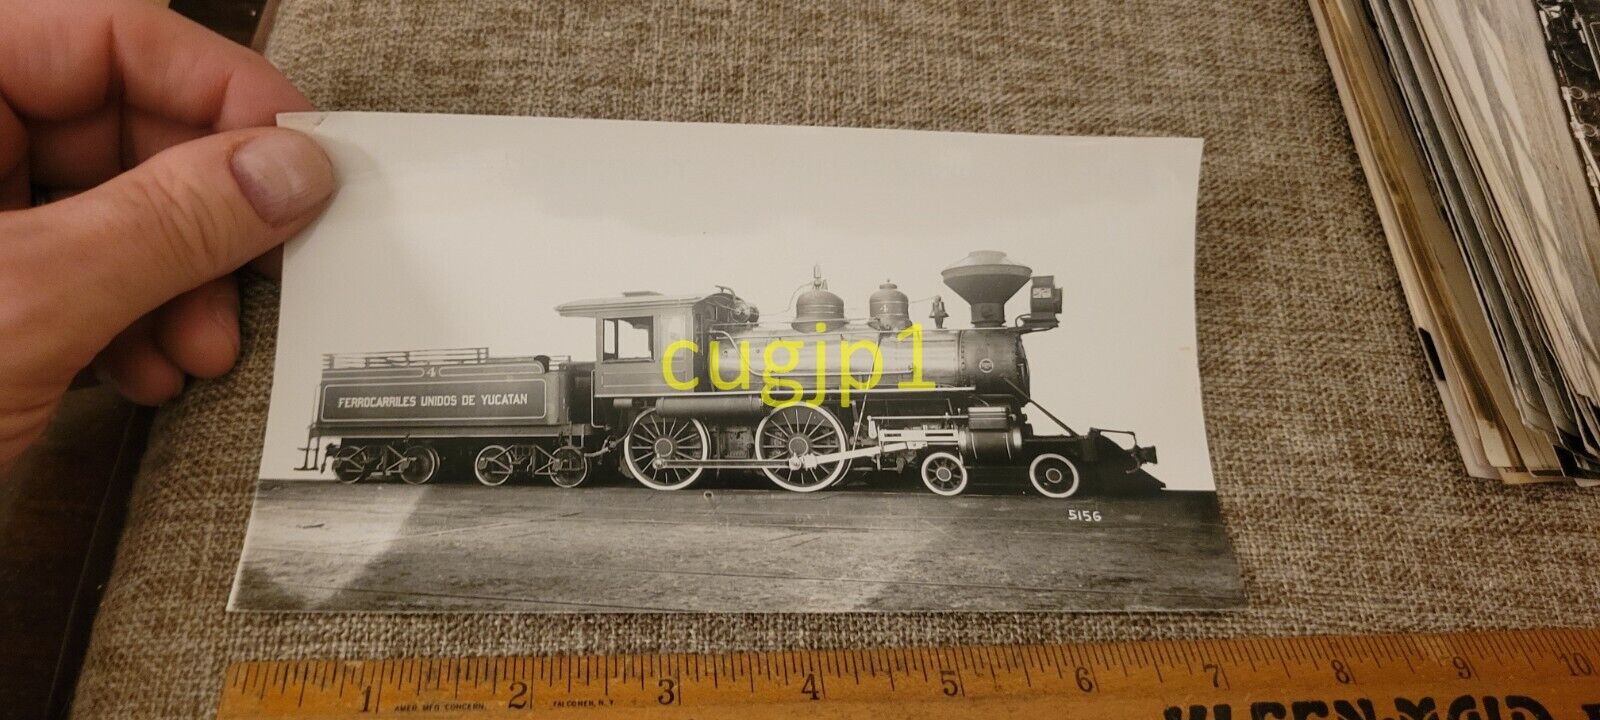 R315 Train Photograph Baldwin Locomotive Works BUILT 1914 NEG 5156 FC UNIDOS DE